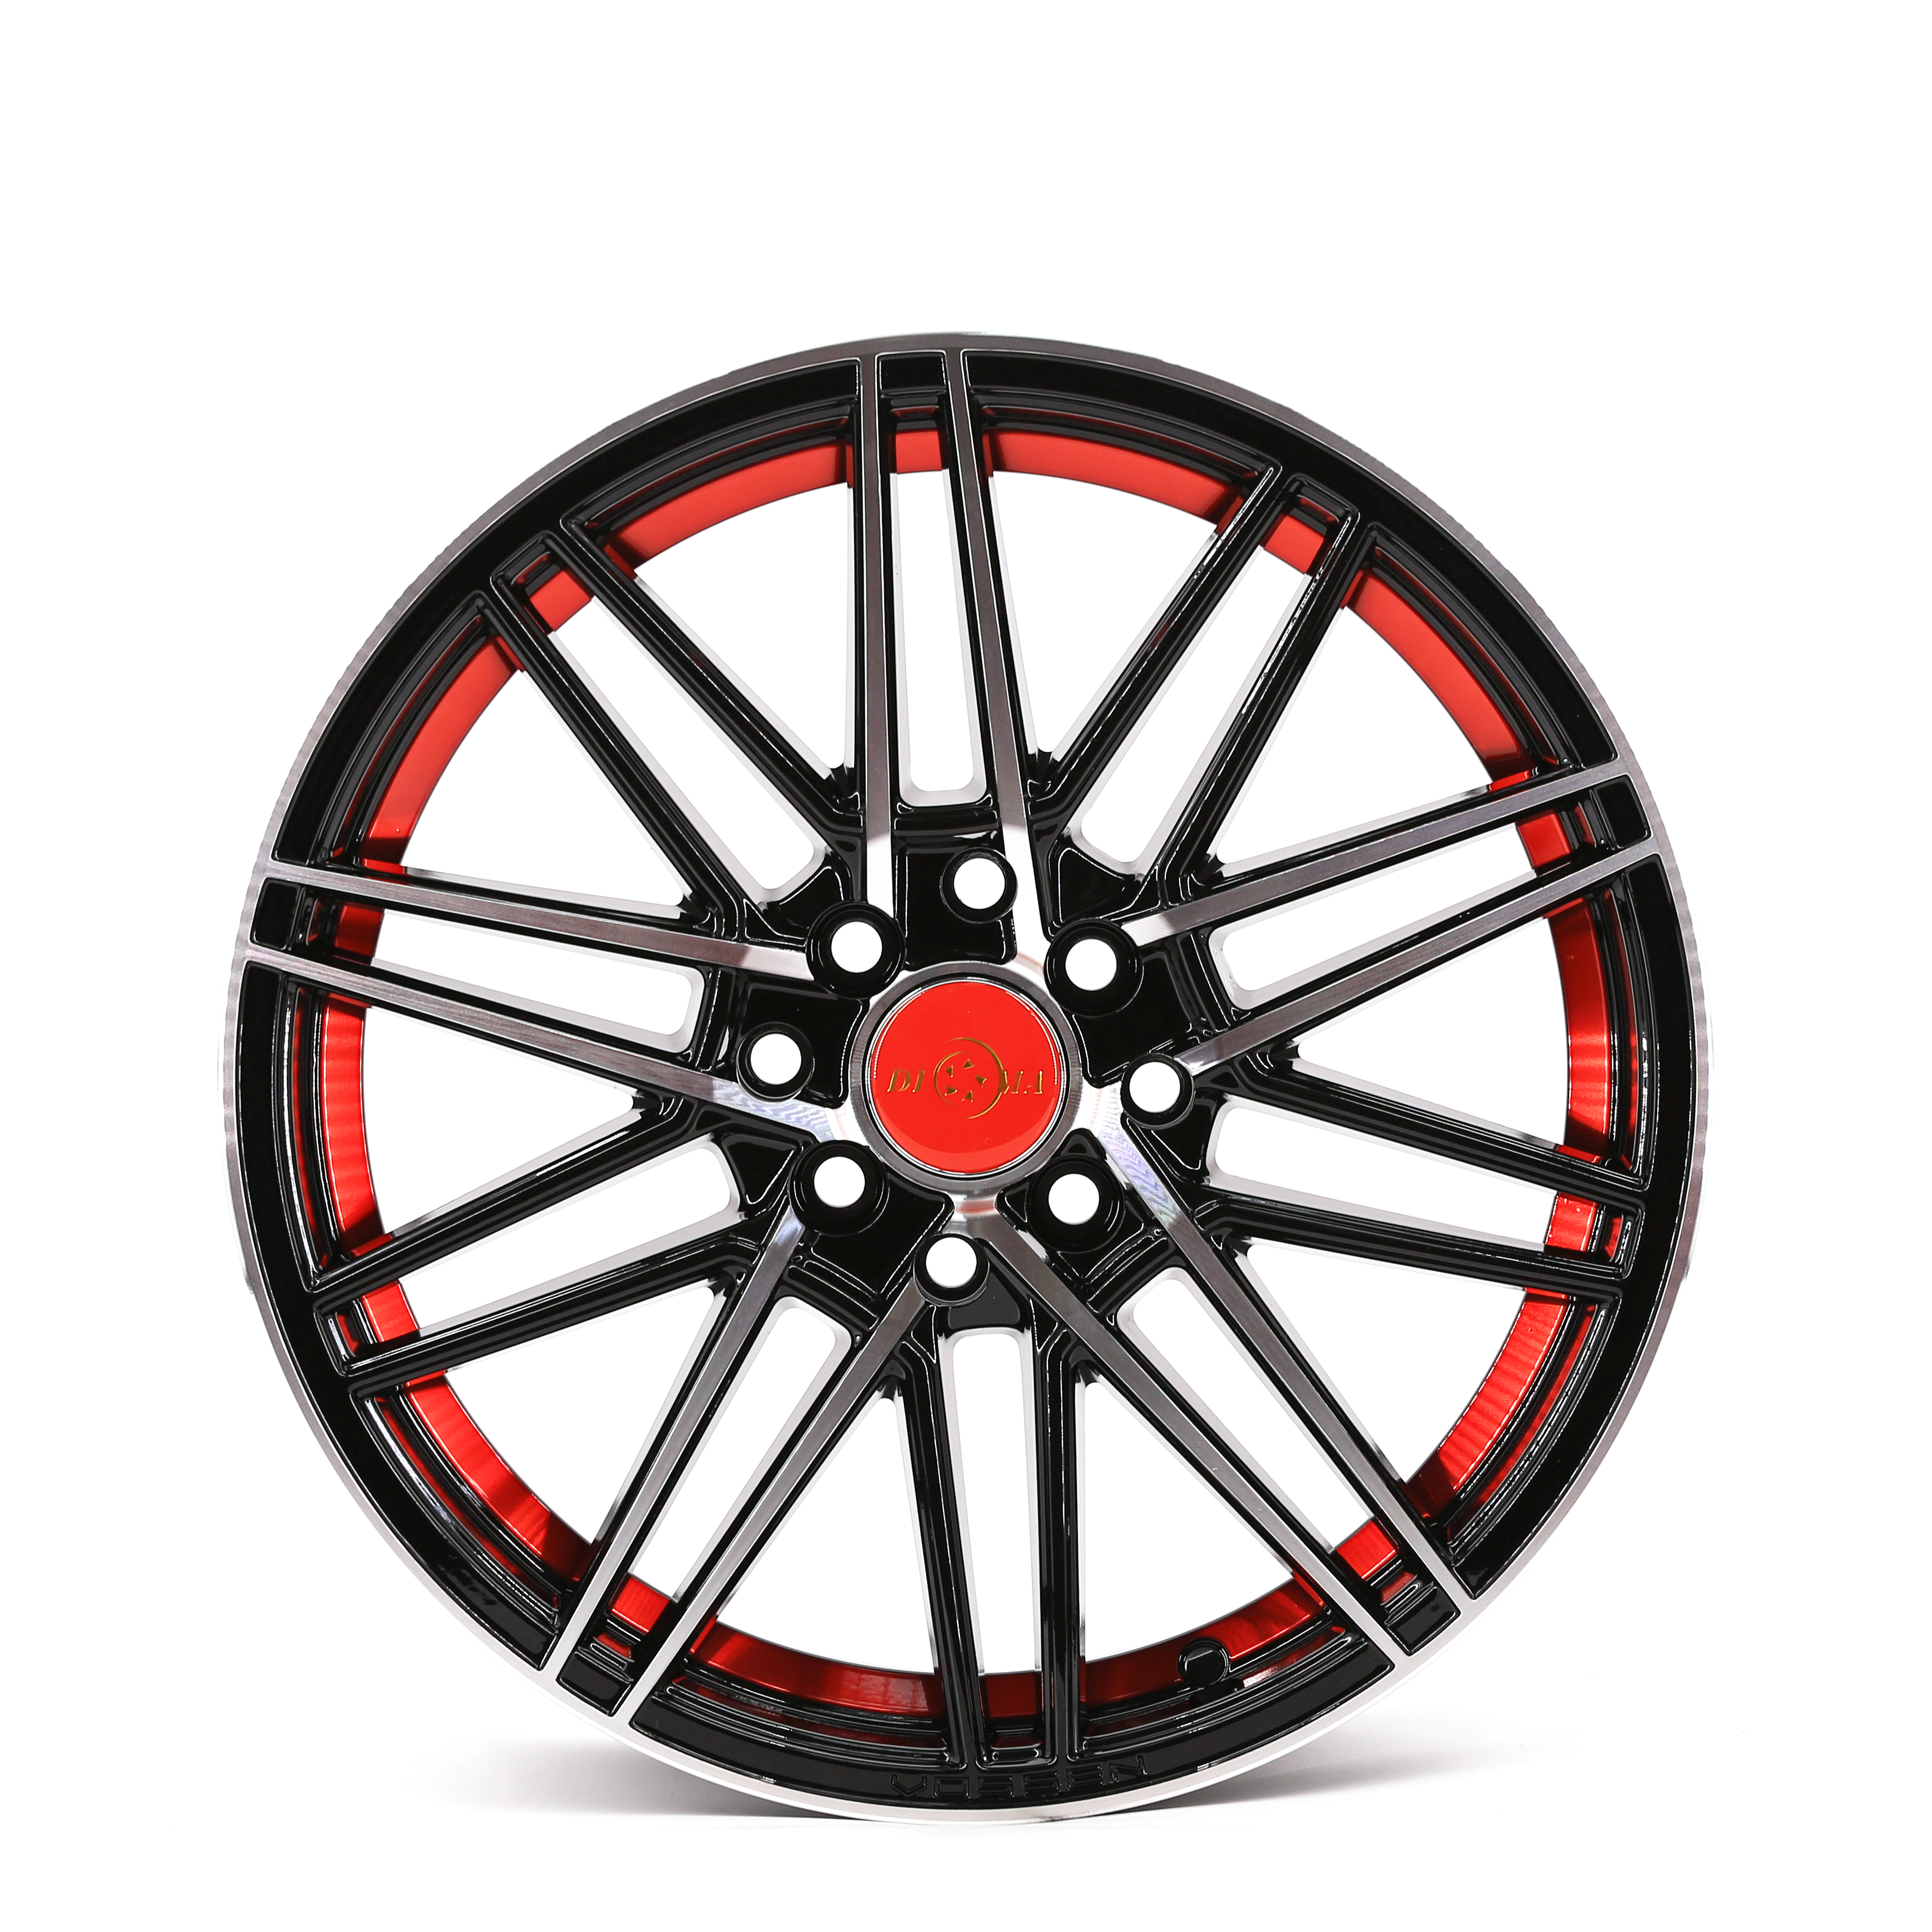 Rayone Wheels Design 678 Black Machine Face 15inch 16inch 17inch Car Alloy Wheels